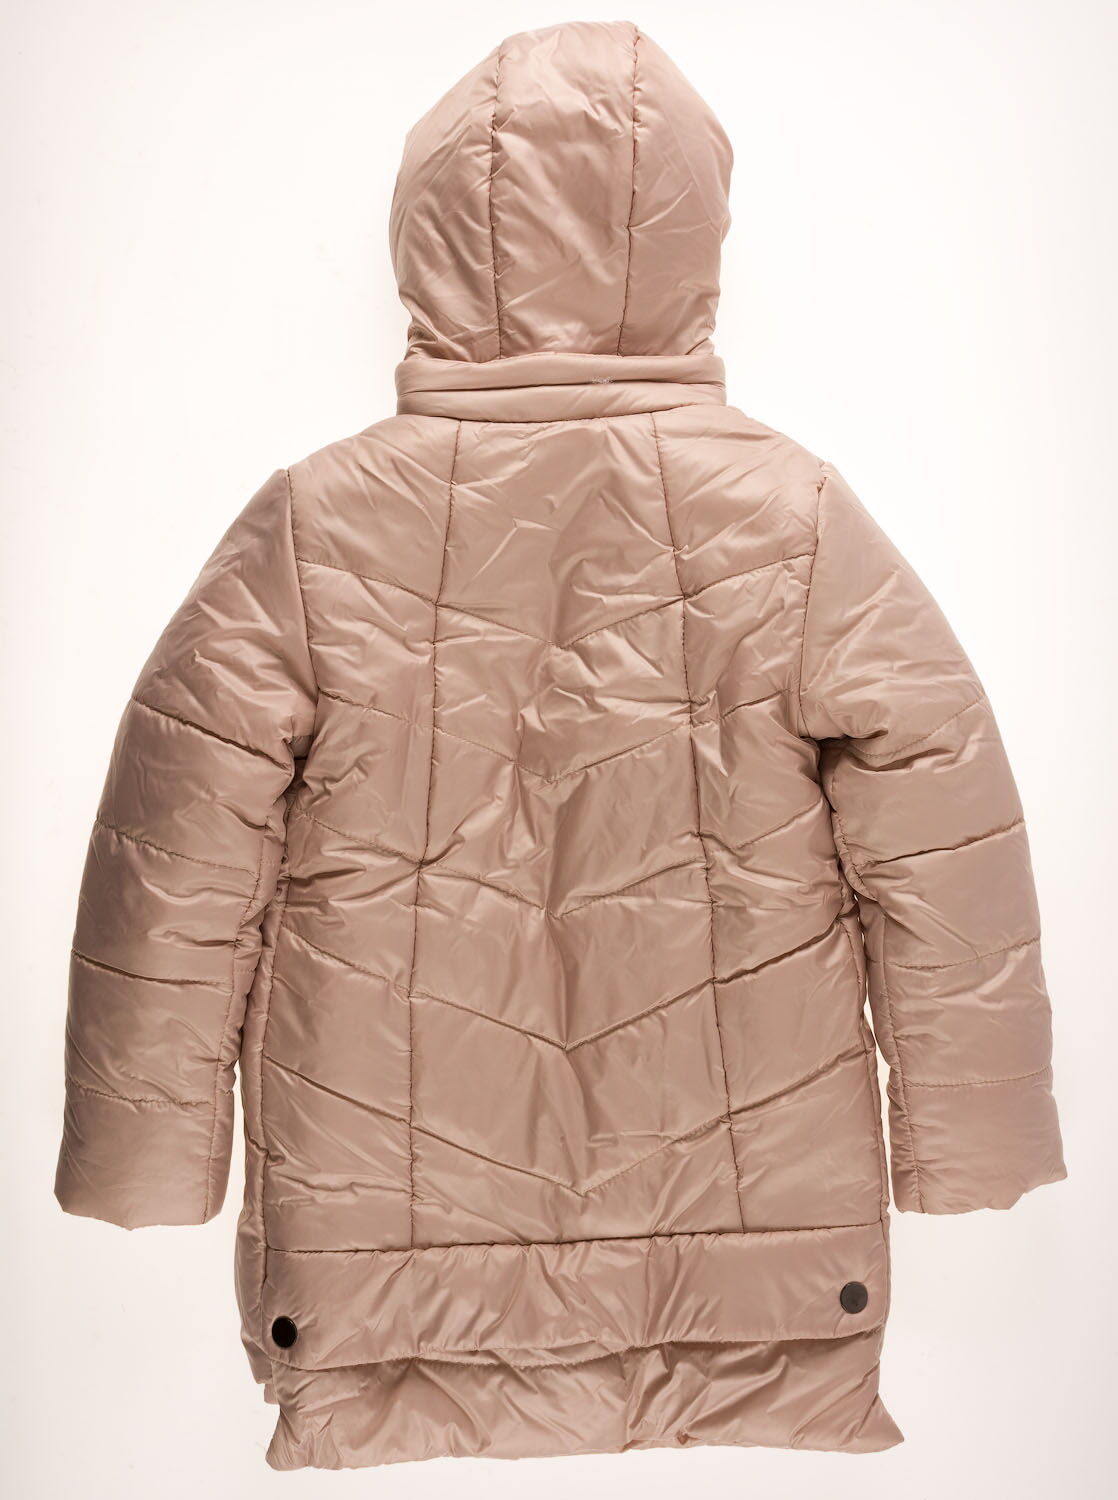 Куртка удлиненная зимняя для девочки Одягайко бежевая 20004 - размеры